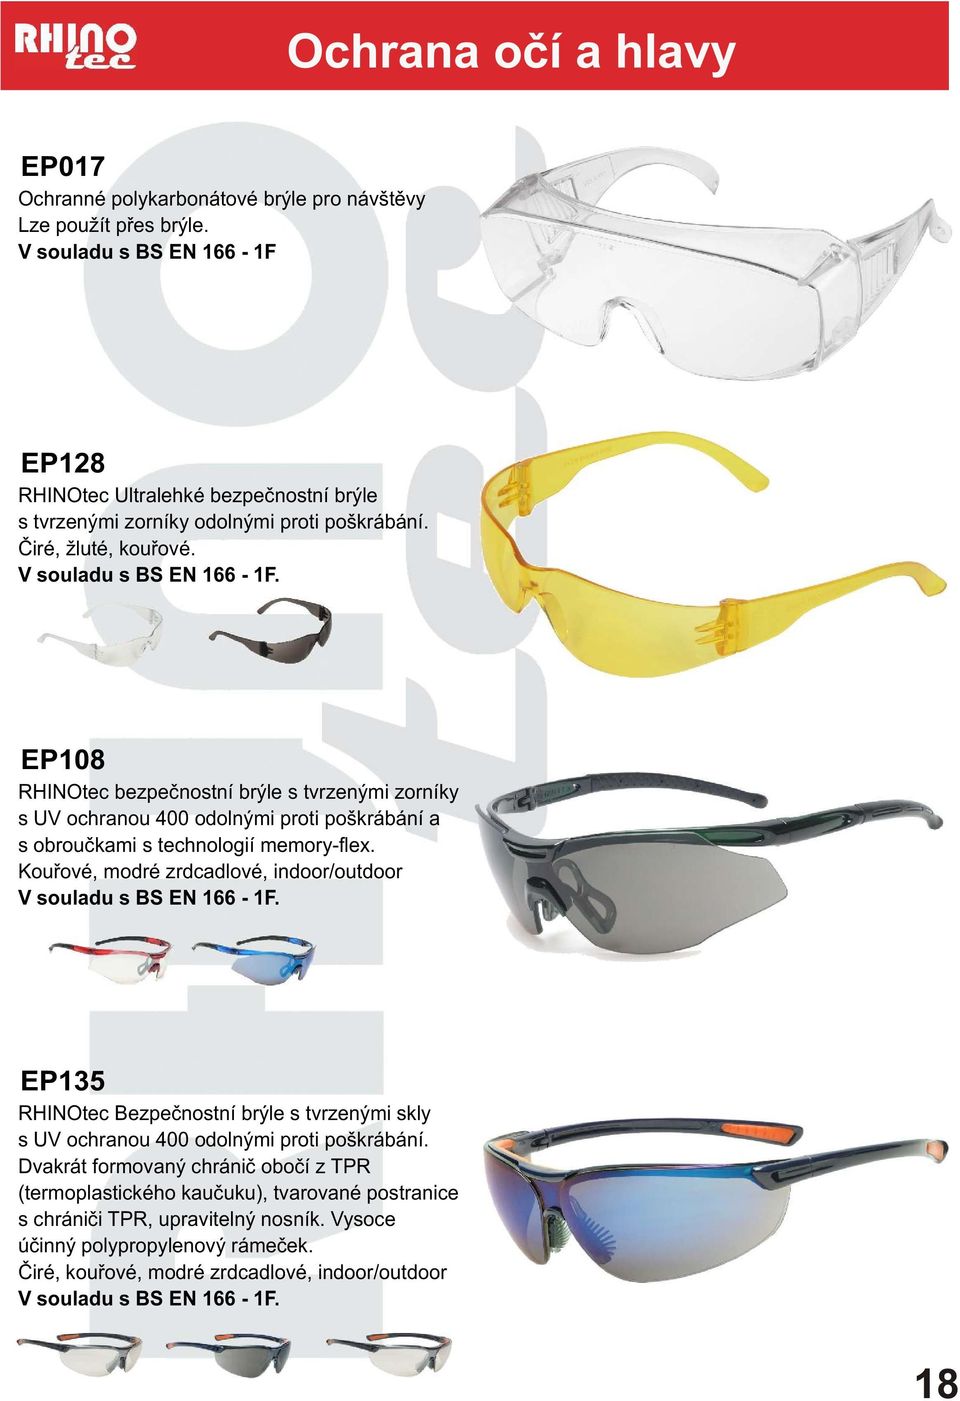 EP08 RHINOtec bezpeènostní brýle s tvrzenými zorníky s UV ochranou 400 odolnými proti poškrábání a s obrouèkami s technologií memory-flex.